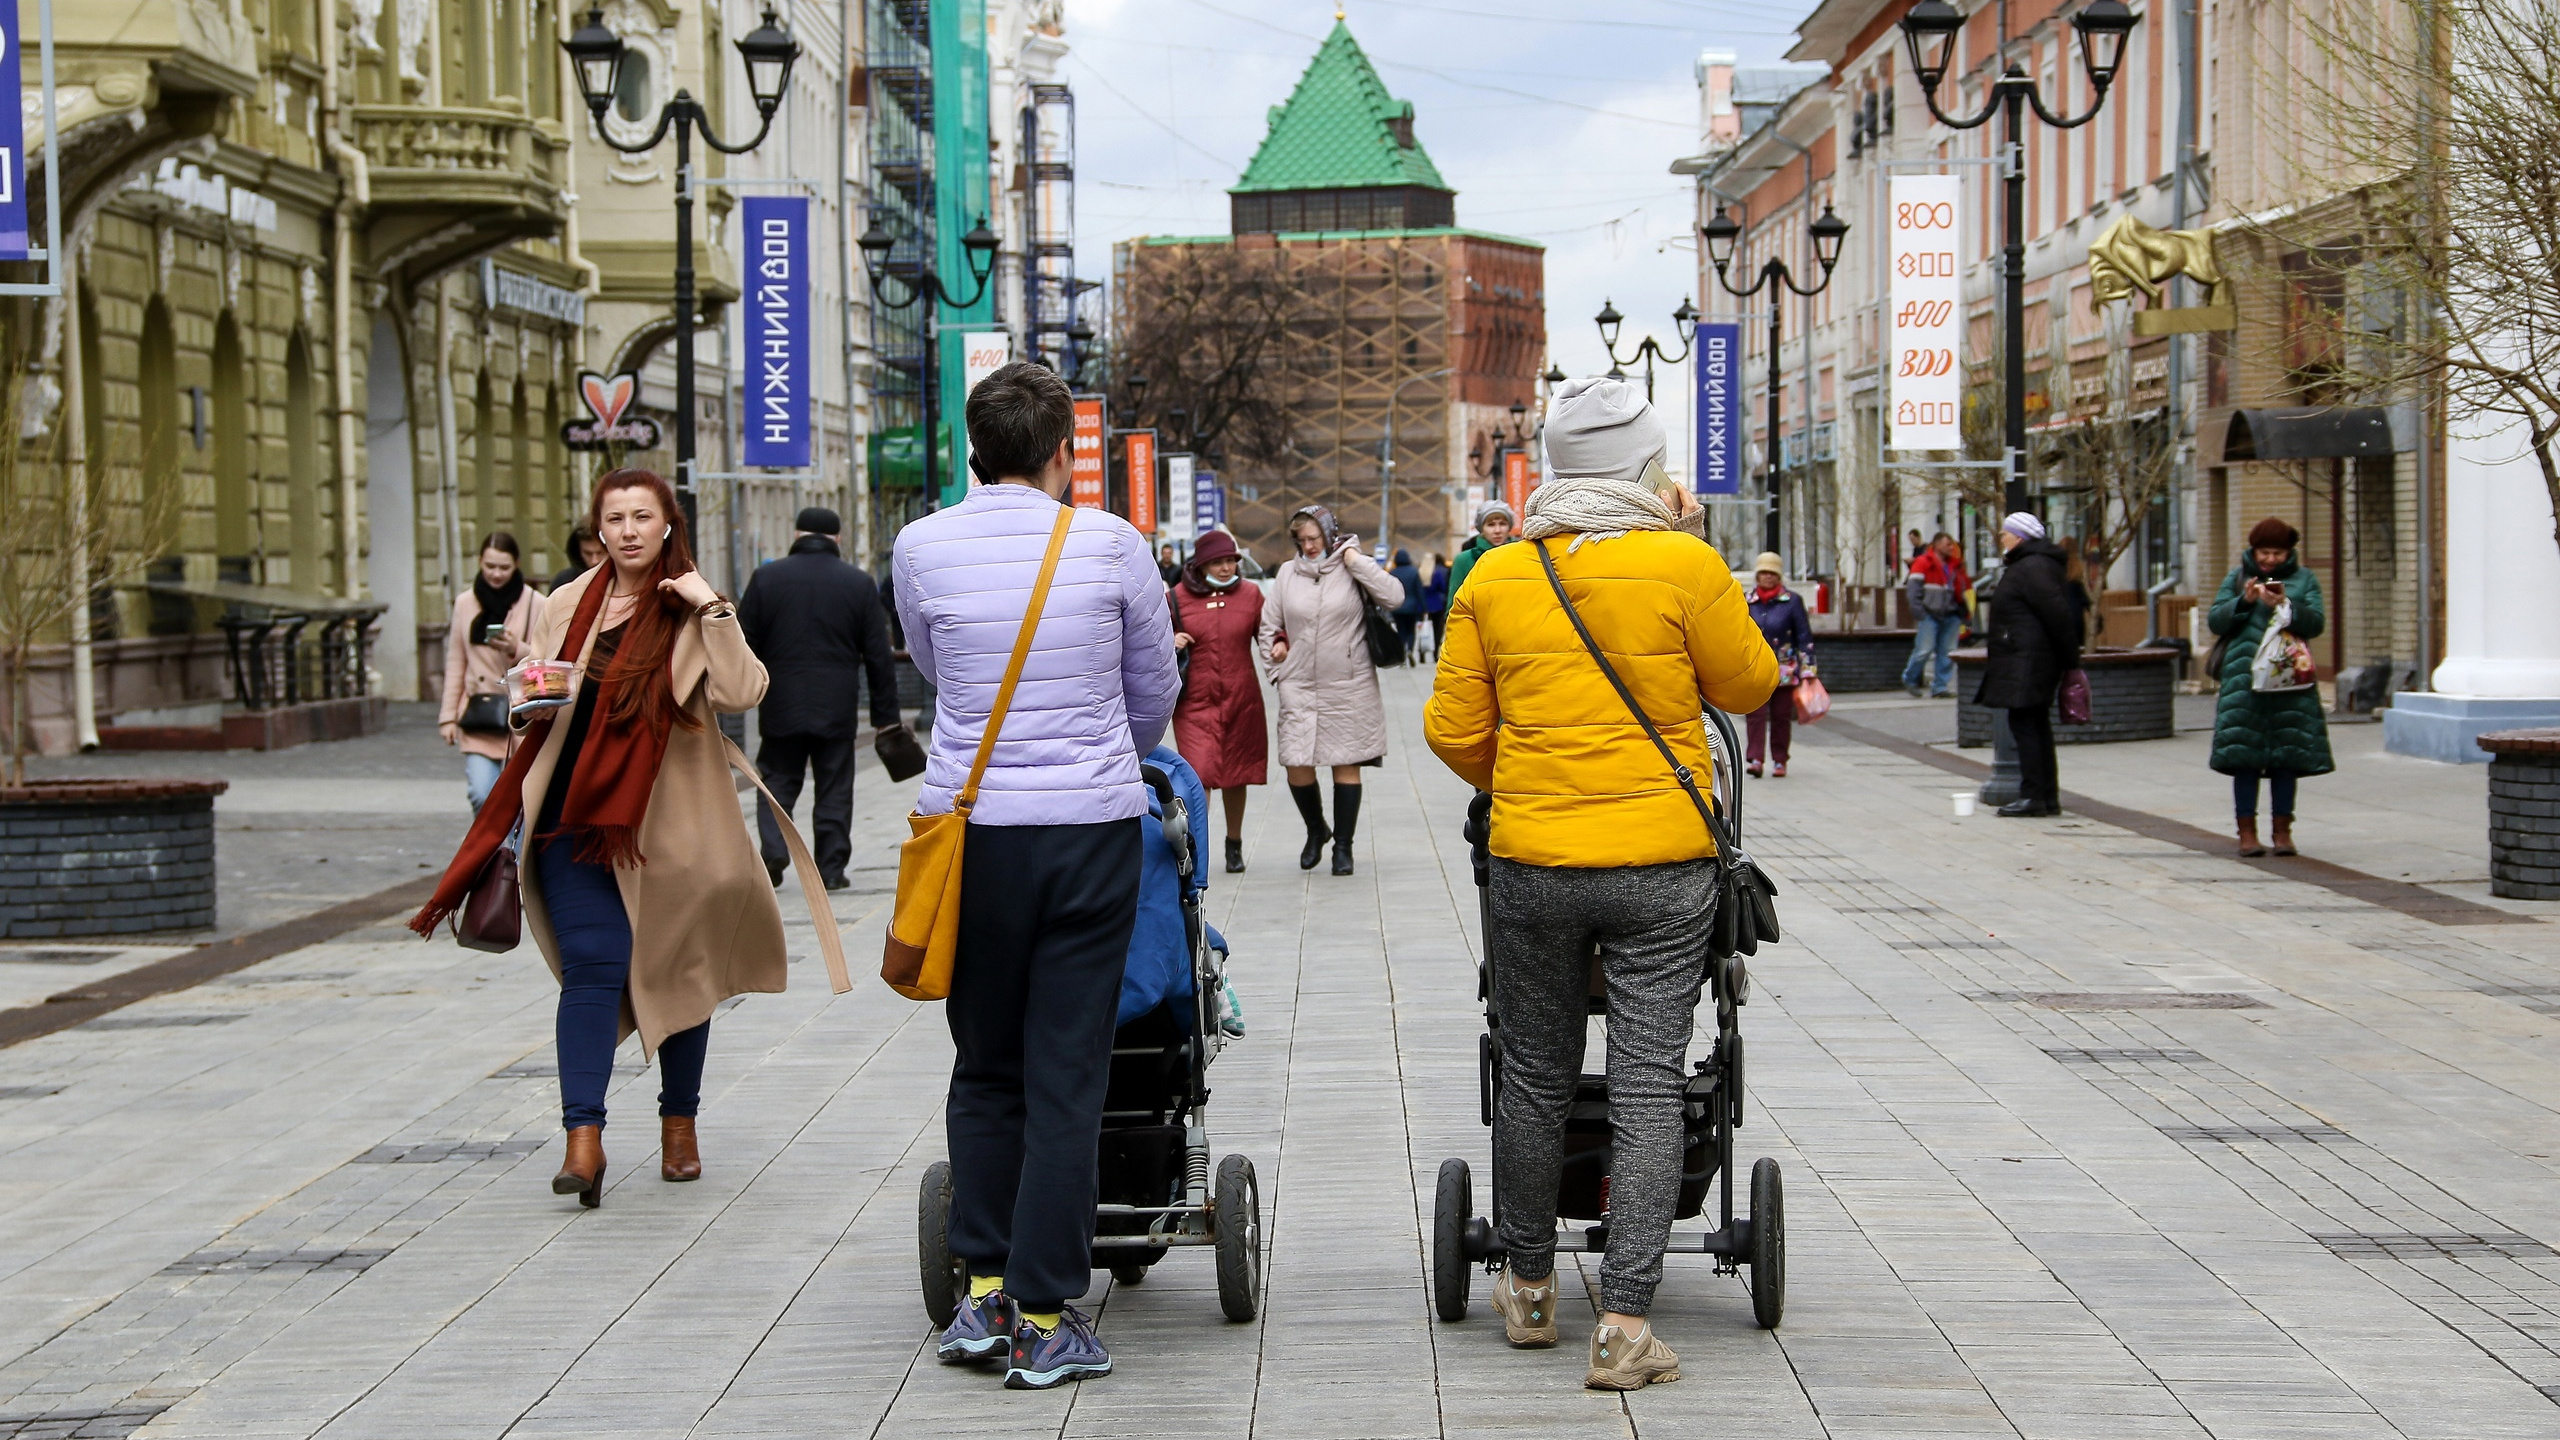 В Нижнем Новгороде «Городские проекты» организуют бесплатные исследовательские прогулки в честь юбилея урбанистки